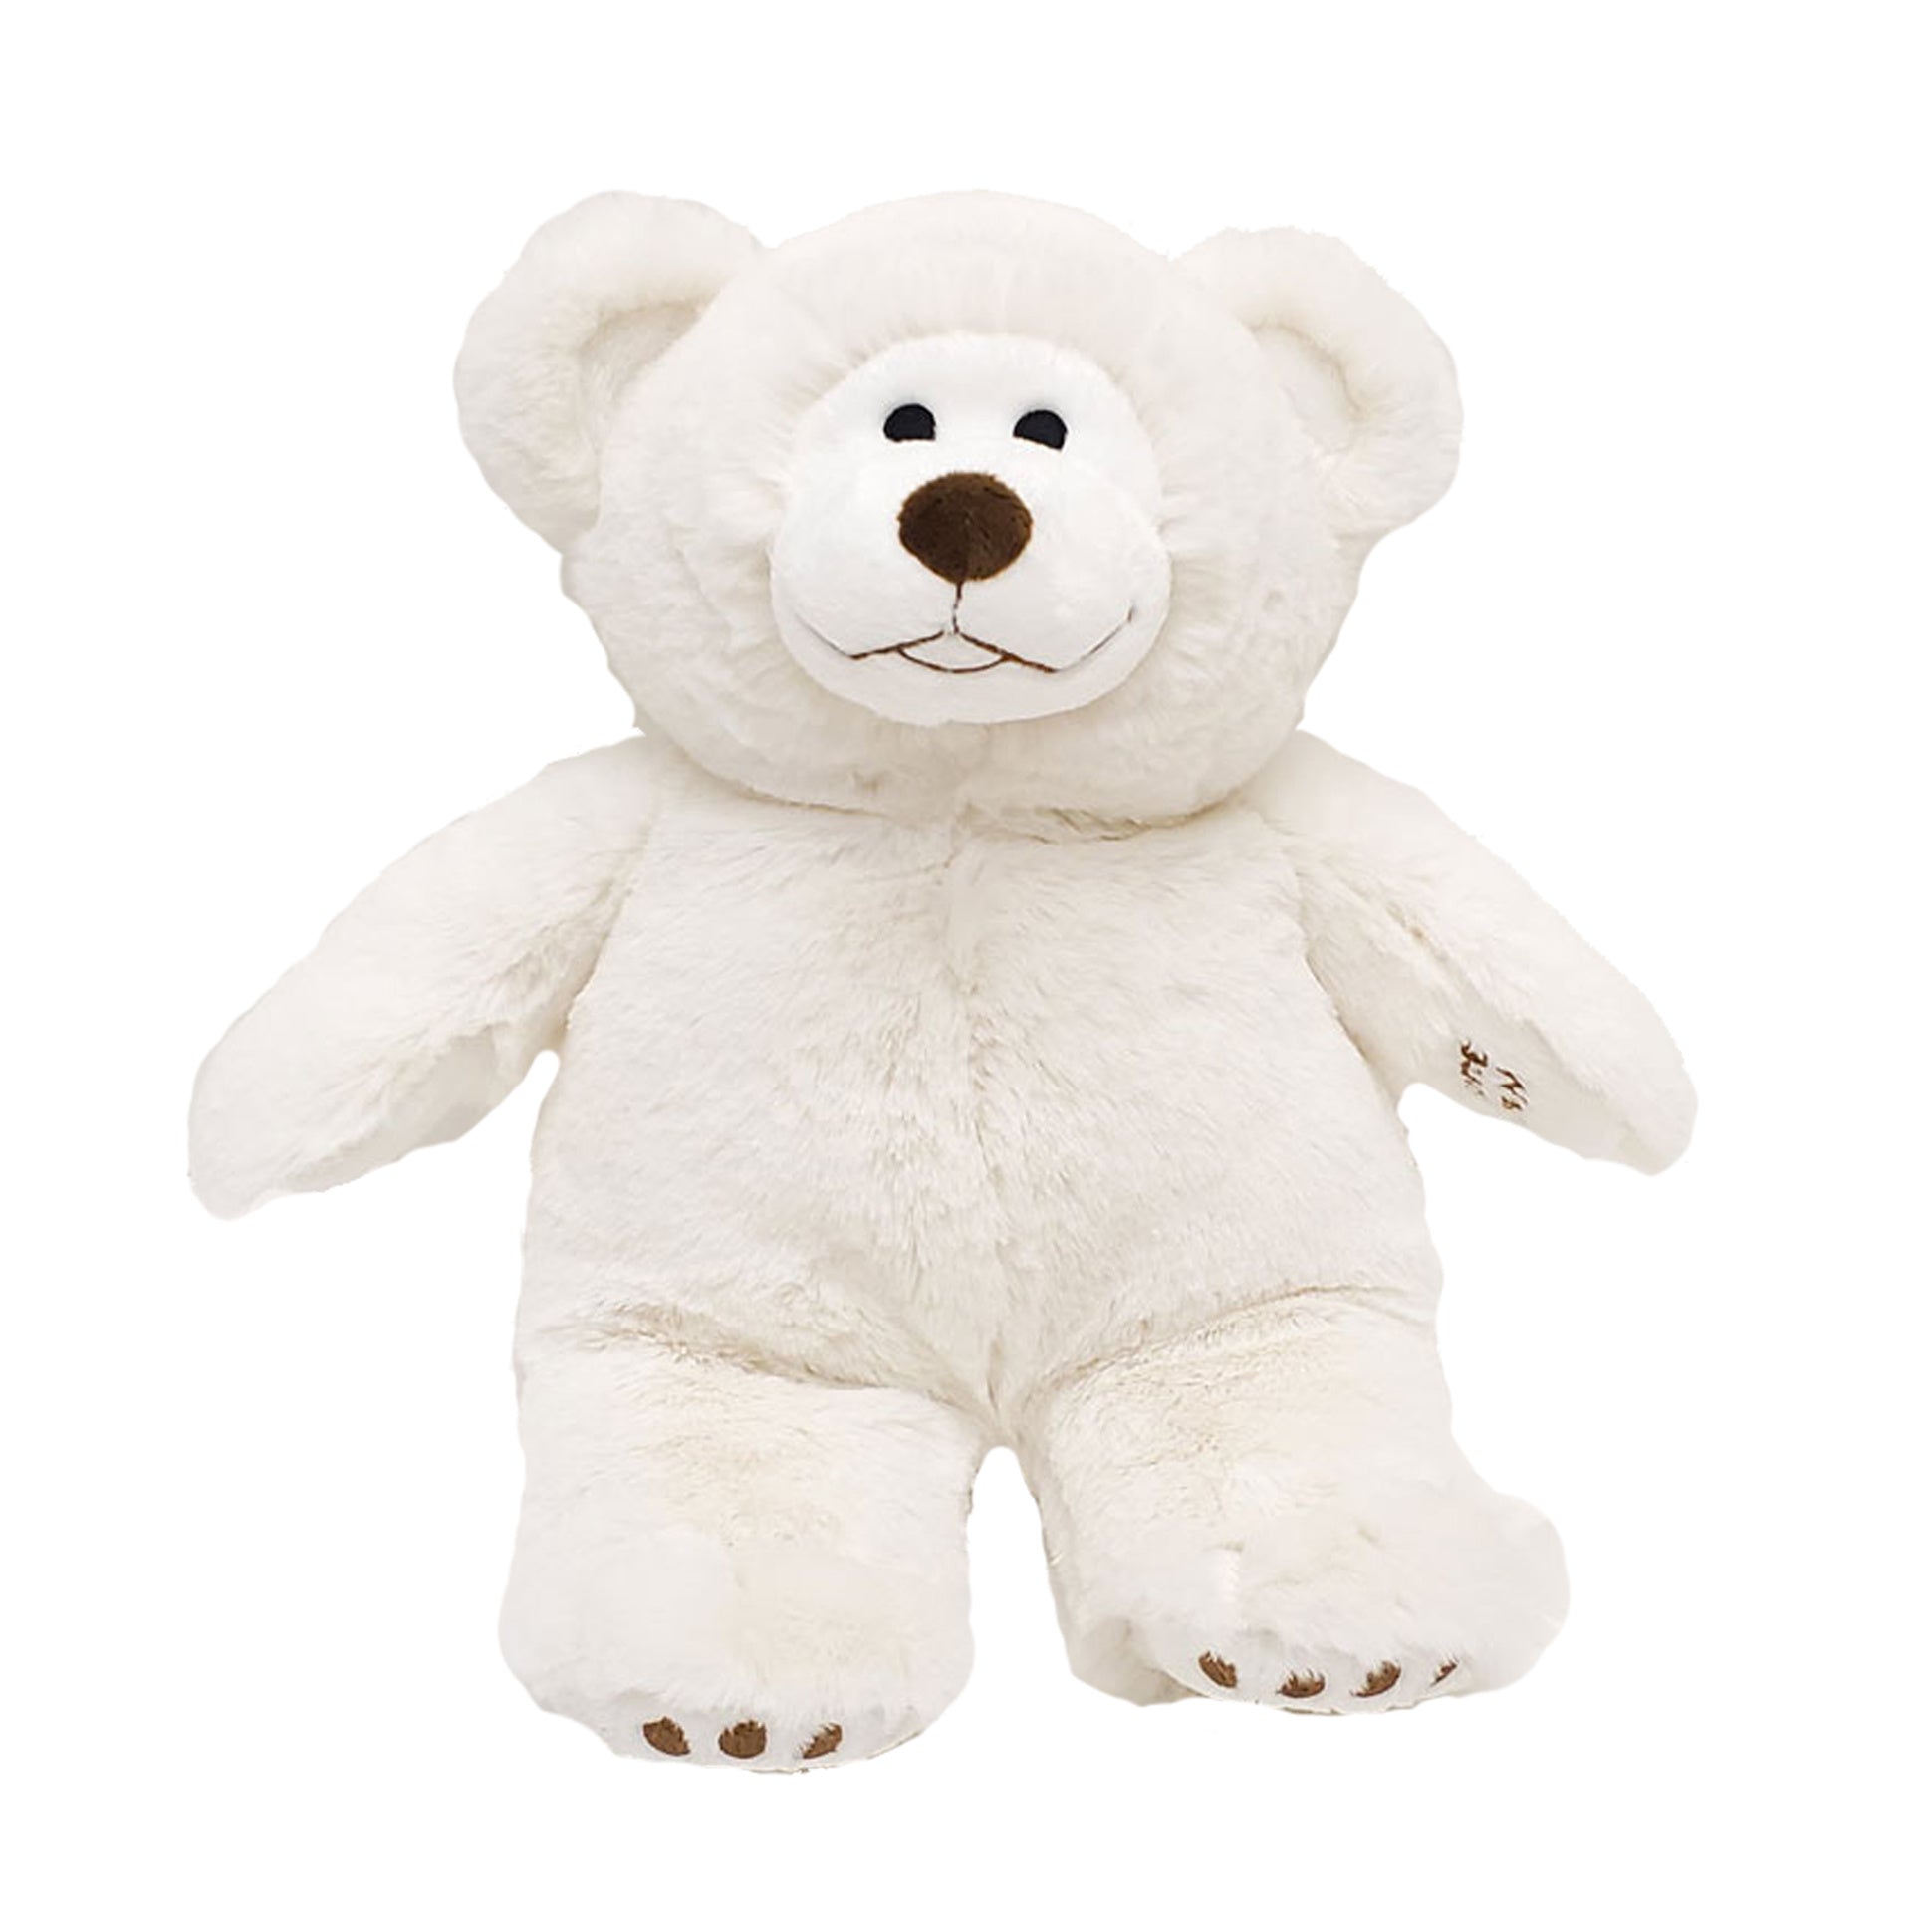 Cuddle Buddy Bear - White - Heated Stuffed Animal